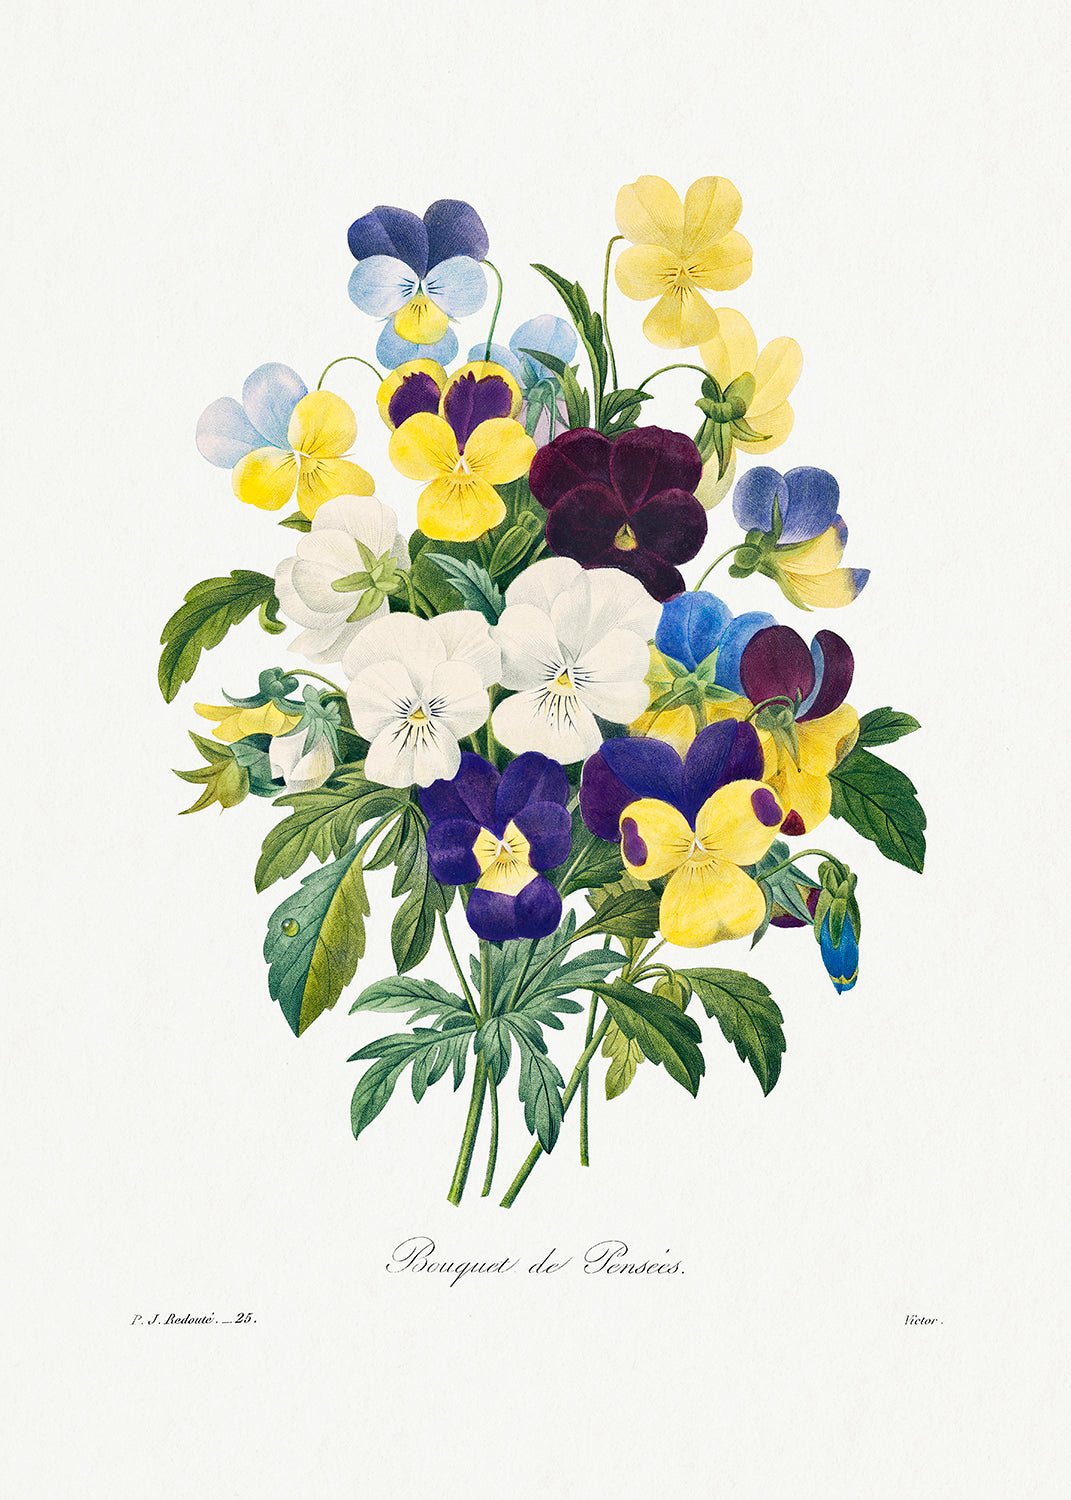 Botanical Plant Print - Pansy bouquet from Choix des plus belles fleurs by Pierre Joseph Redoute